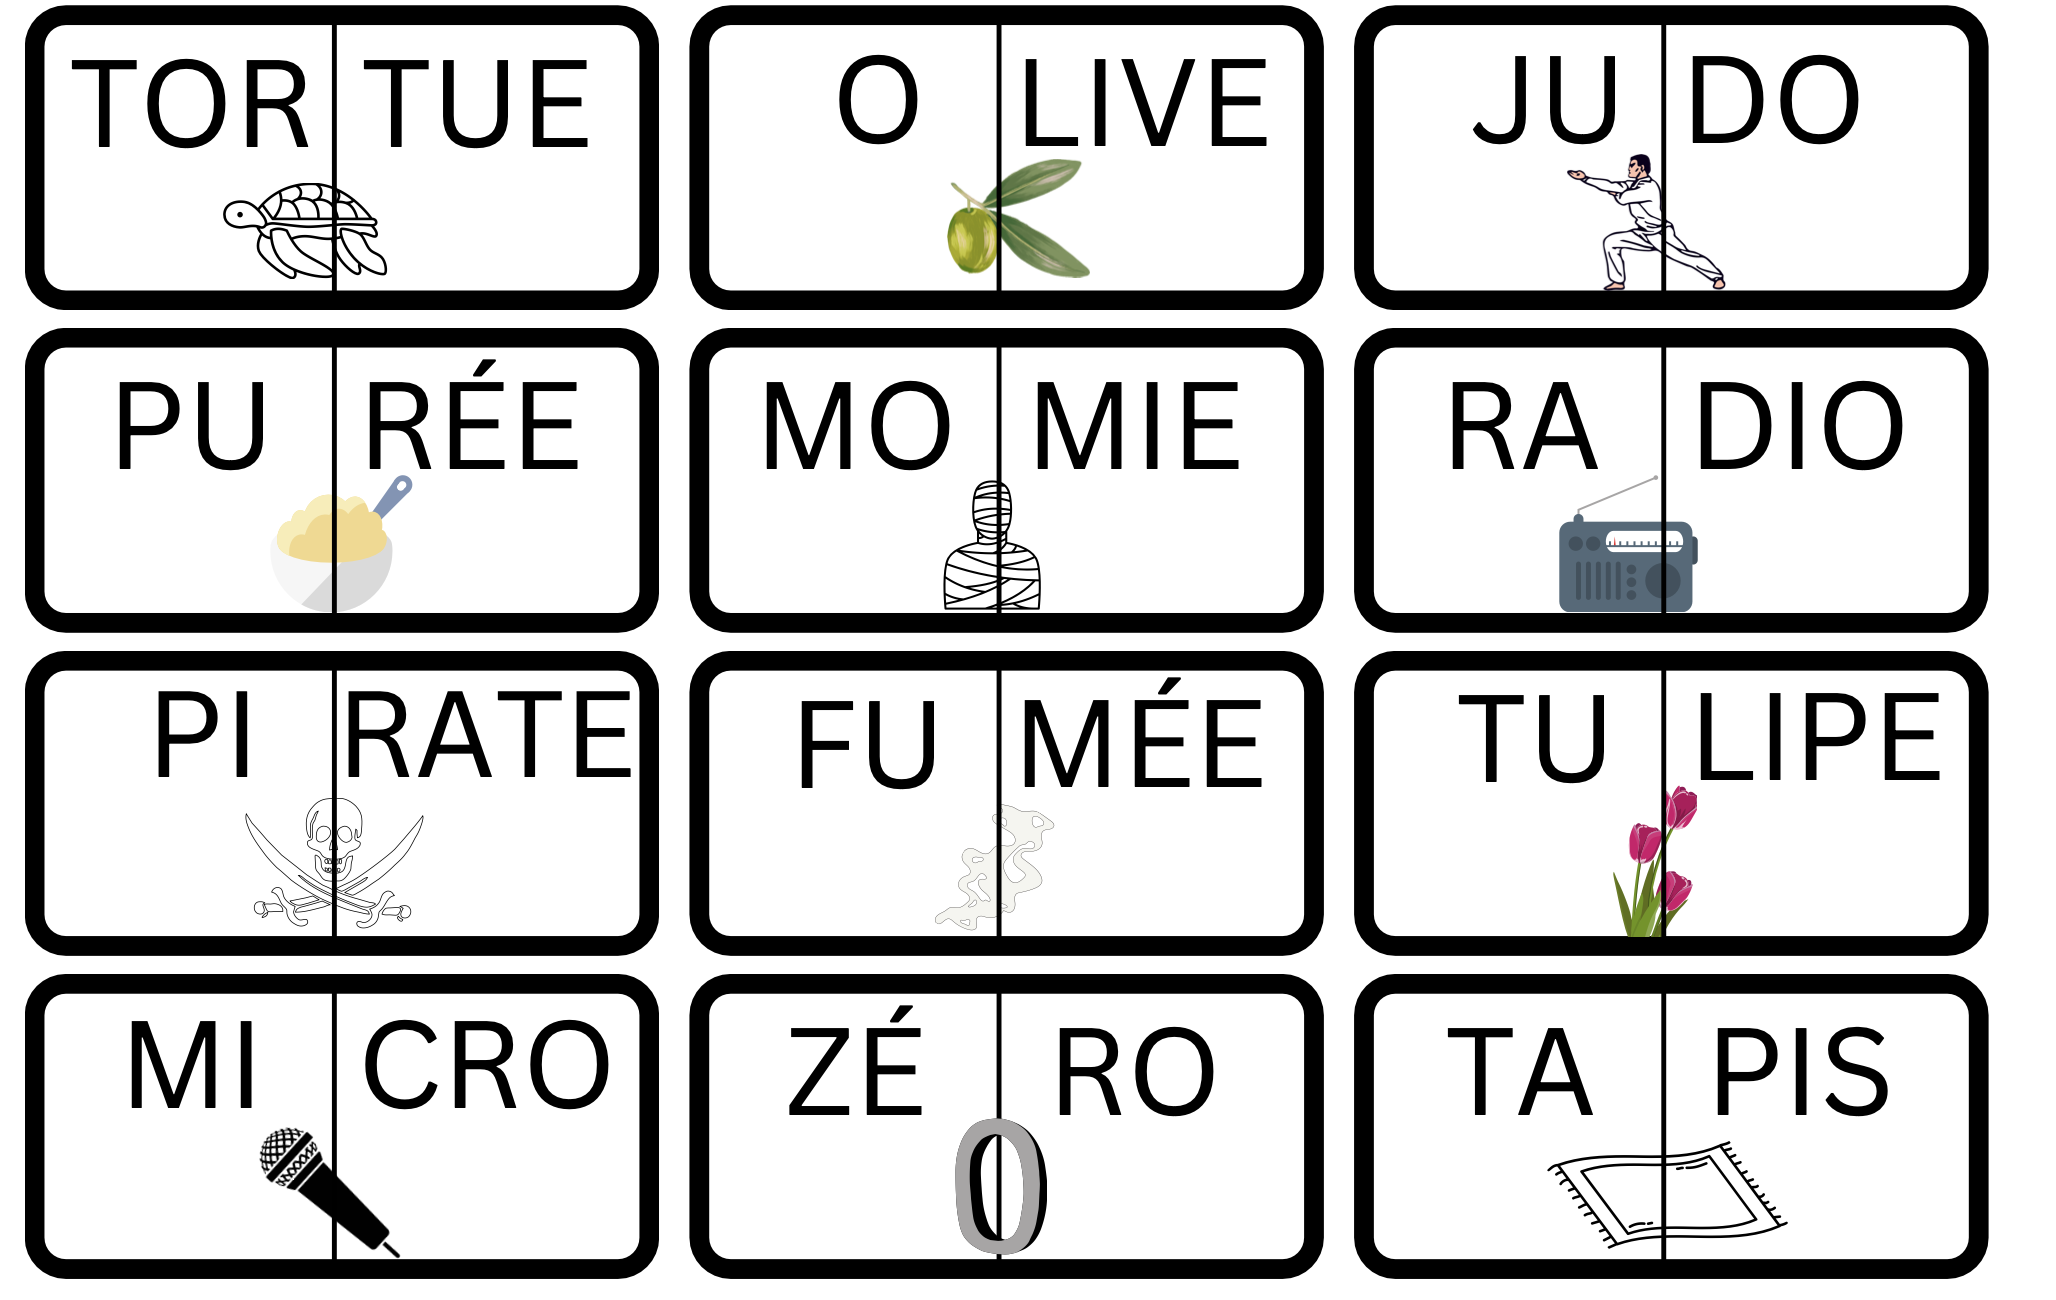 Jeu des syllabes : 36 cartes pour reconstituer des mots imagés